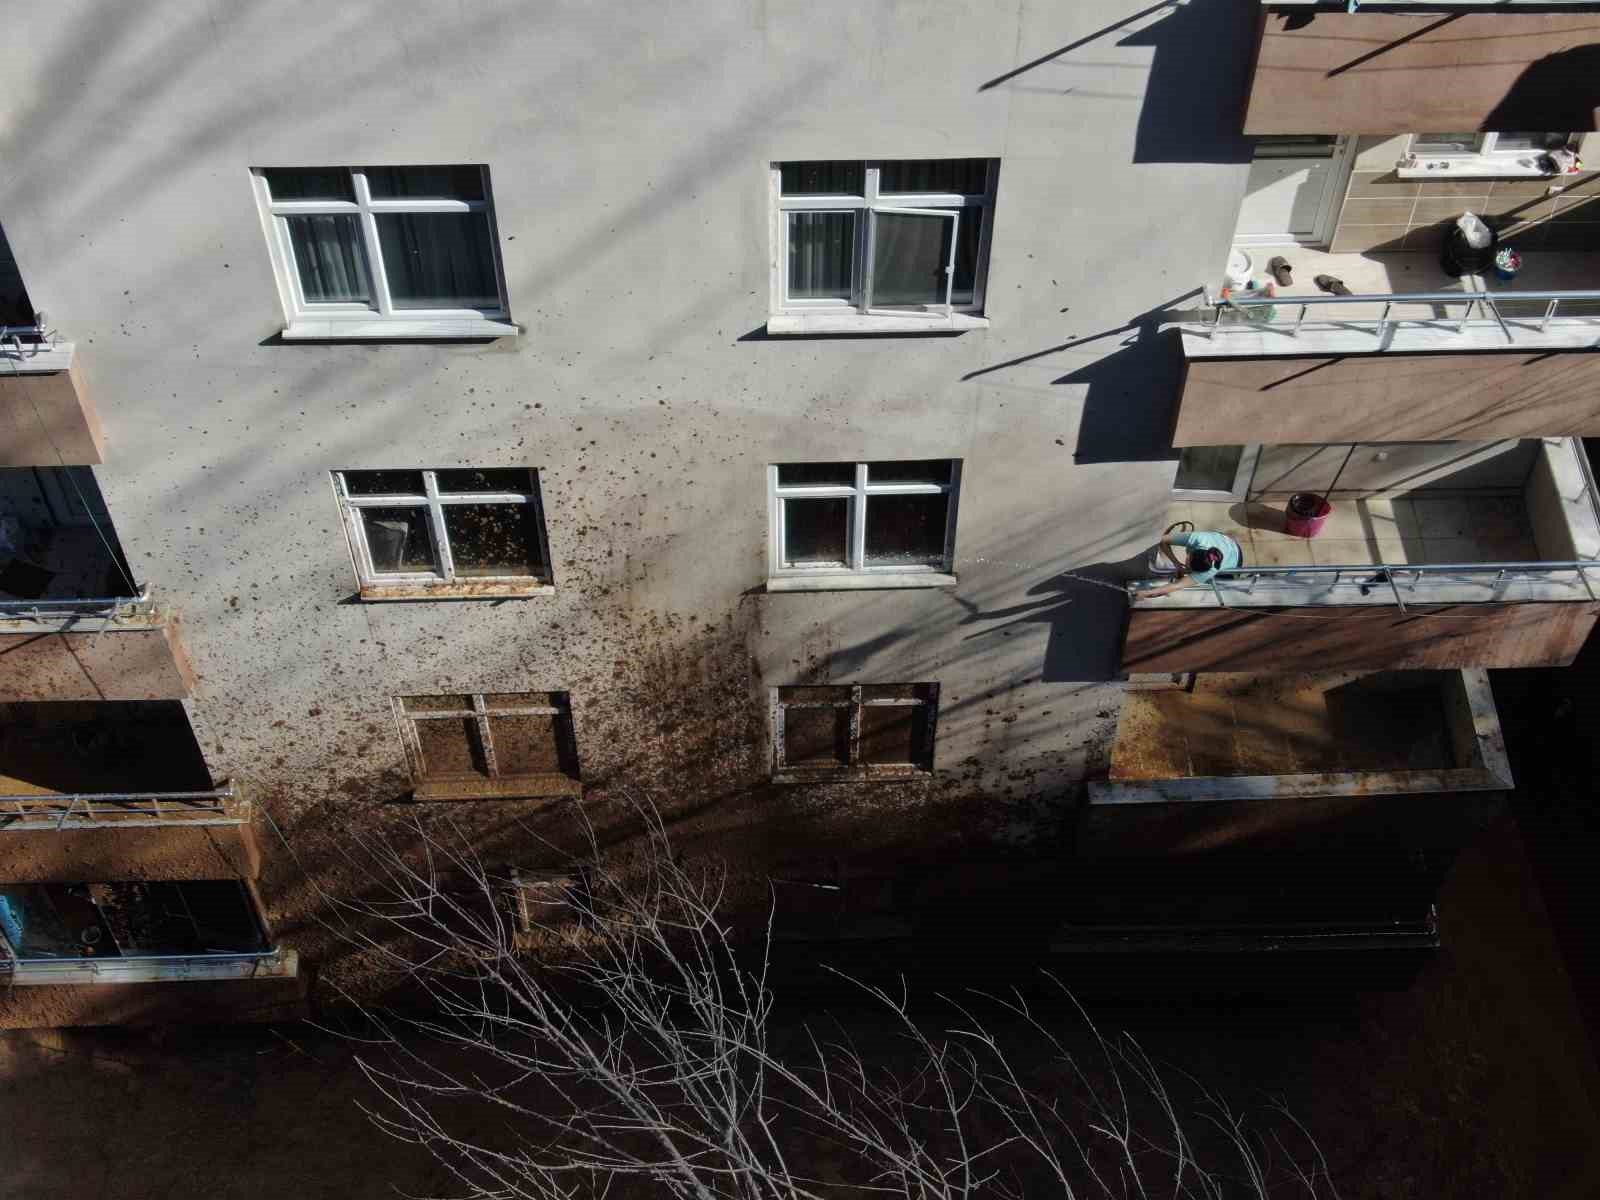 artvinde yamactan kopan topraklar evlerin icerisine doldu 10 bina zarar gordu 0 JZtVdMyb